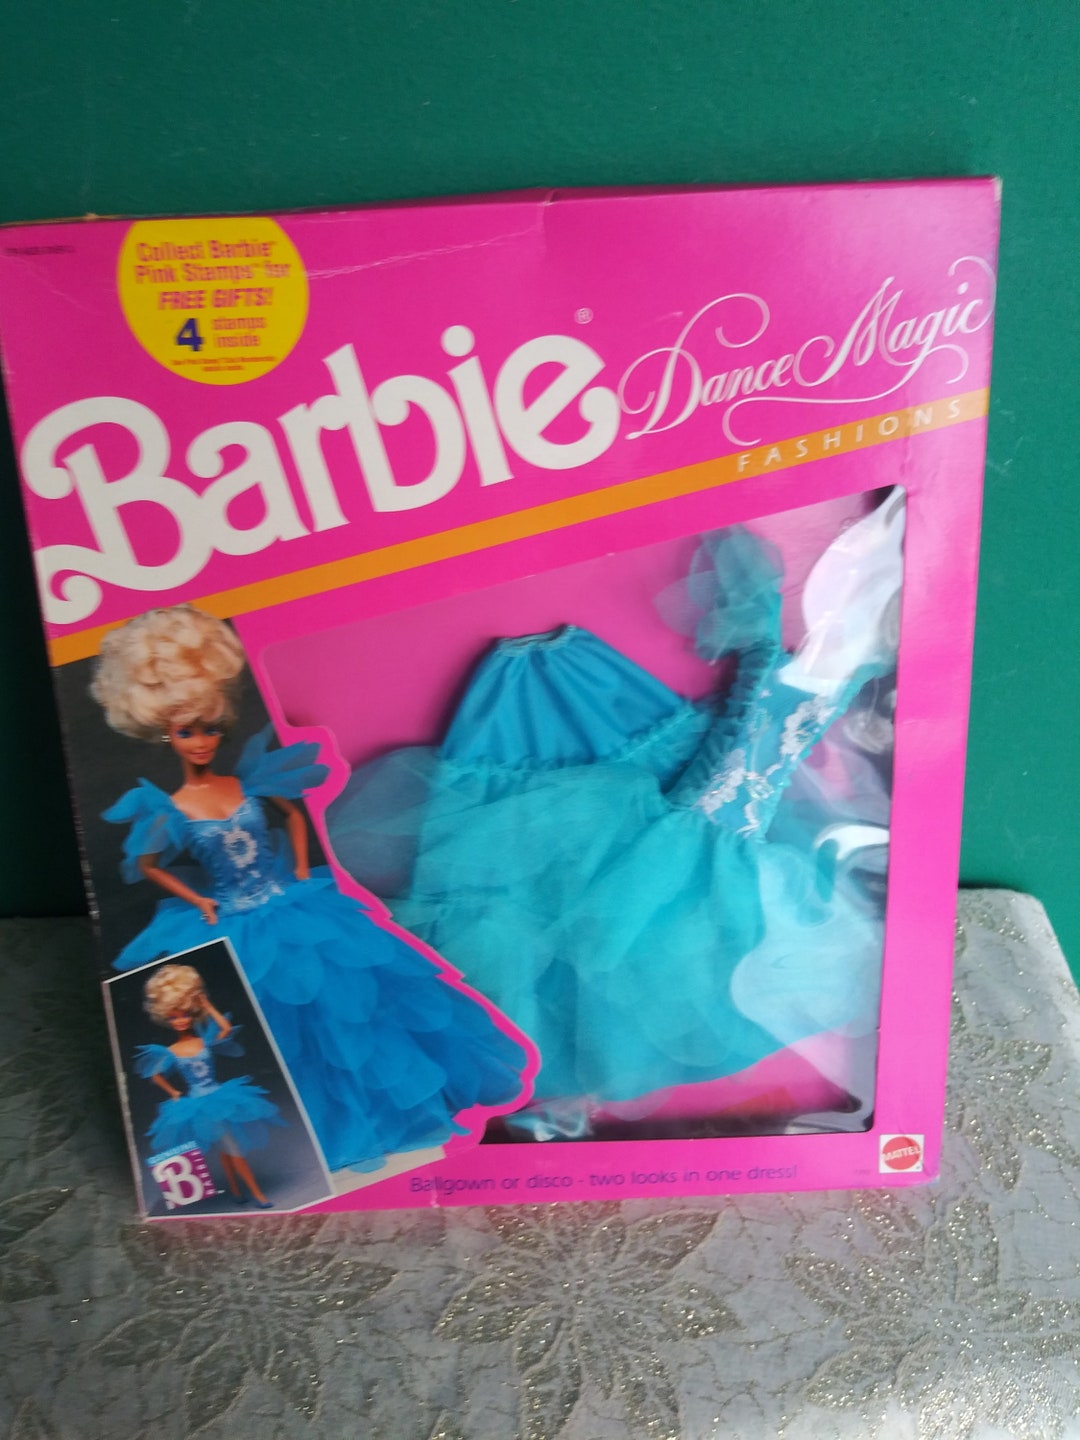 Mattel Vintage Dance Magic Barbie Clothes Vintage 1980's Barbie Clothes ...